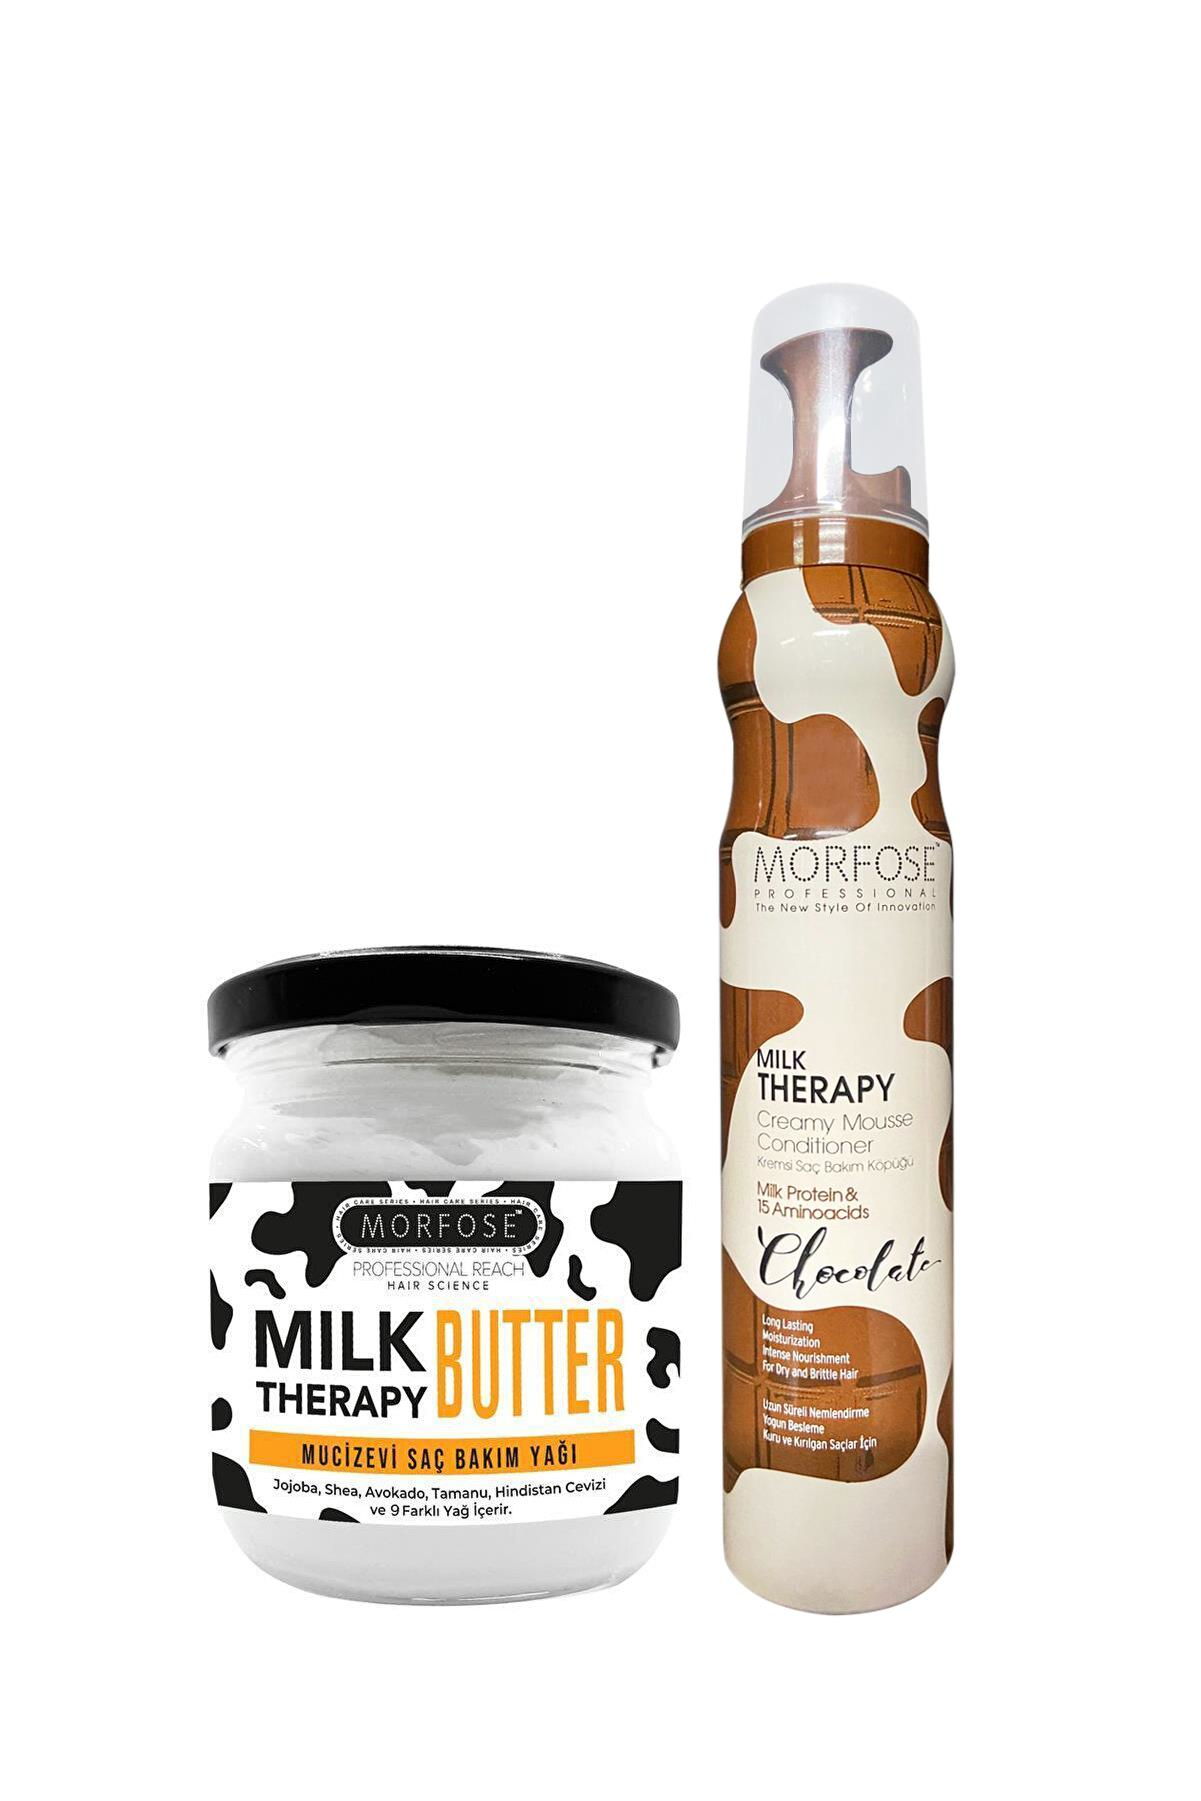 Morfose Milk Therapy Saç Köpüğü Chocolate 200 ml+Milk Therapy Butter Yağ İçeren Mucizevi Saç Bakım Kremi